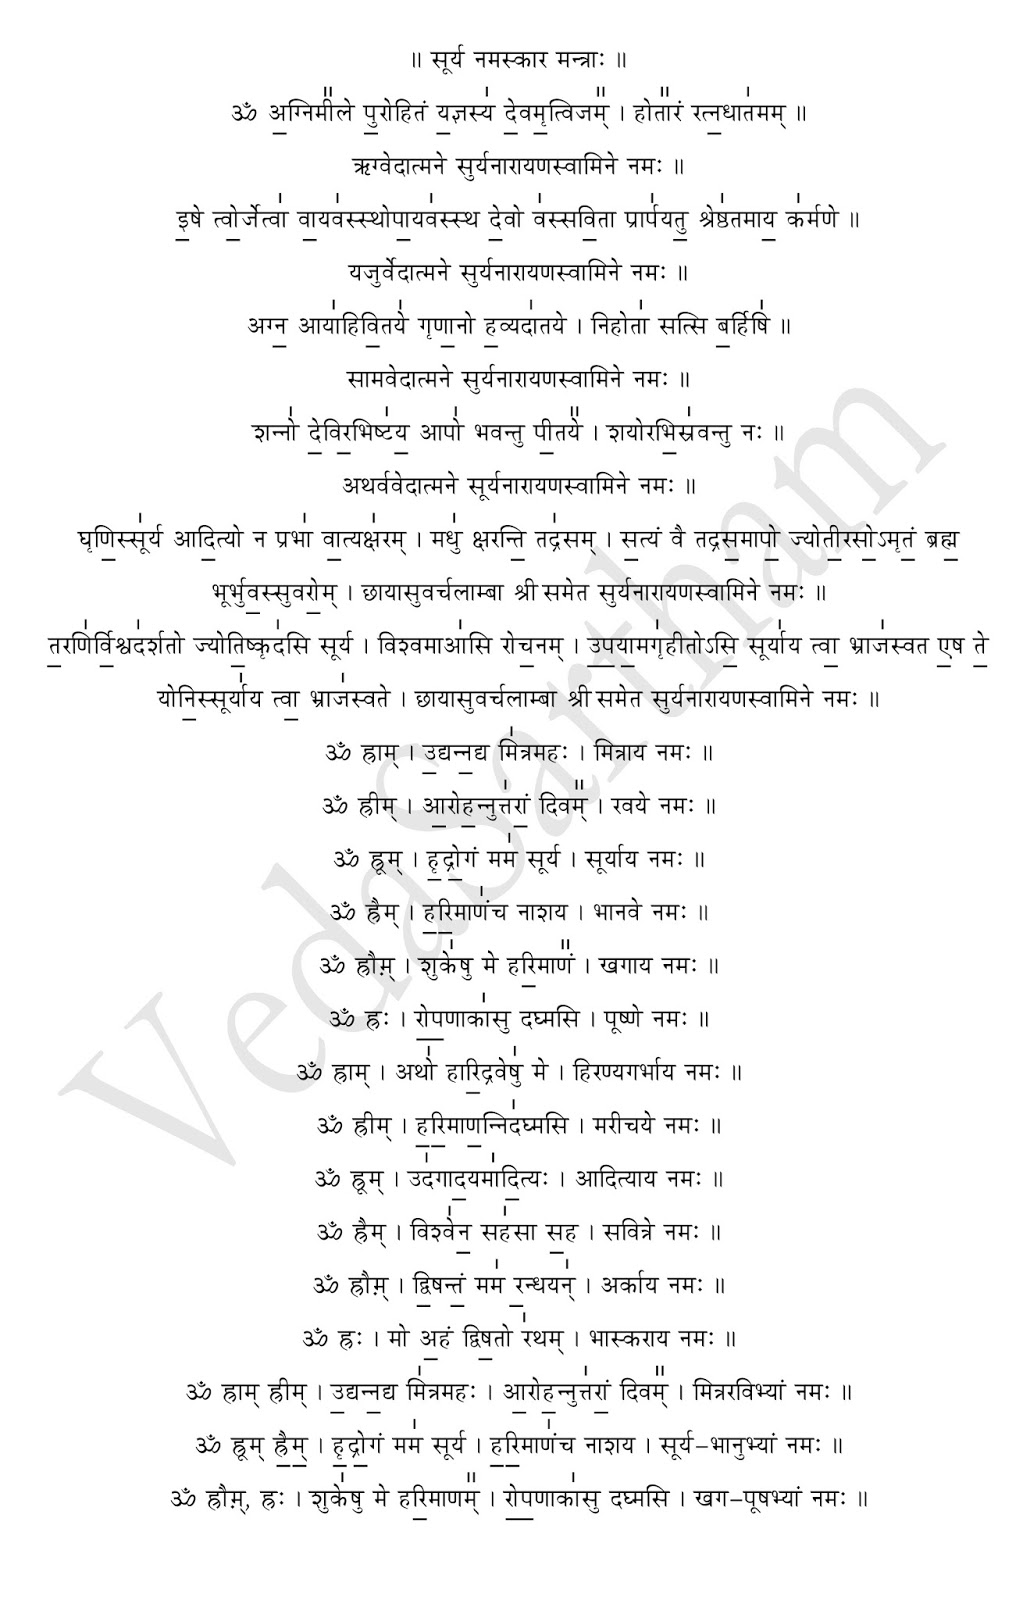 madhurashtakam lyrics in sanskrit